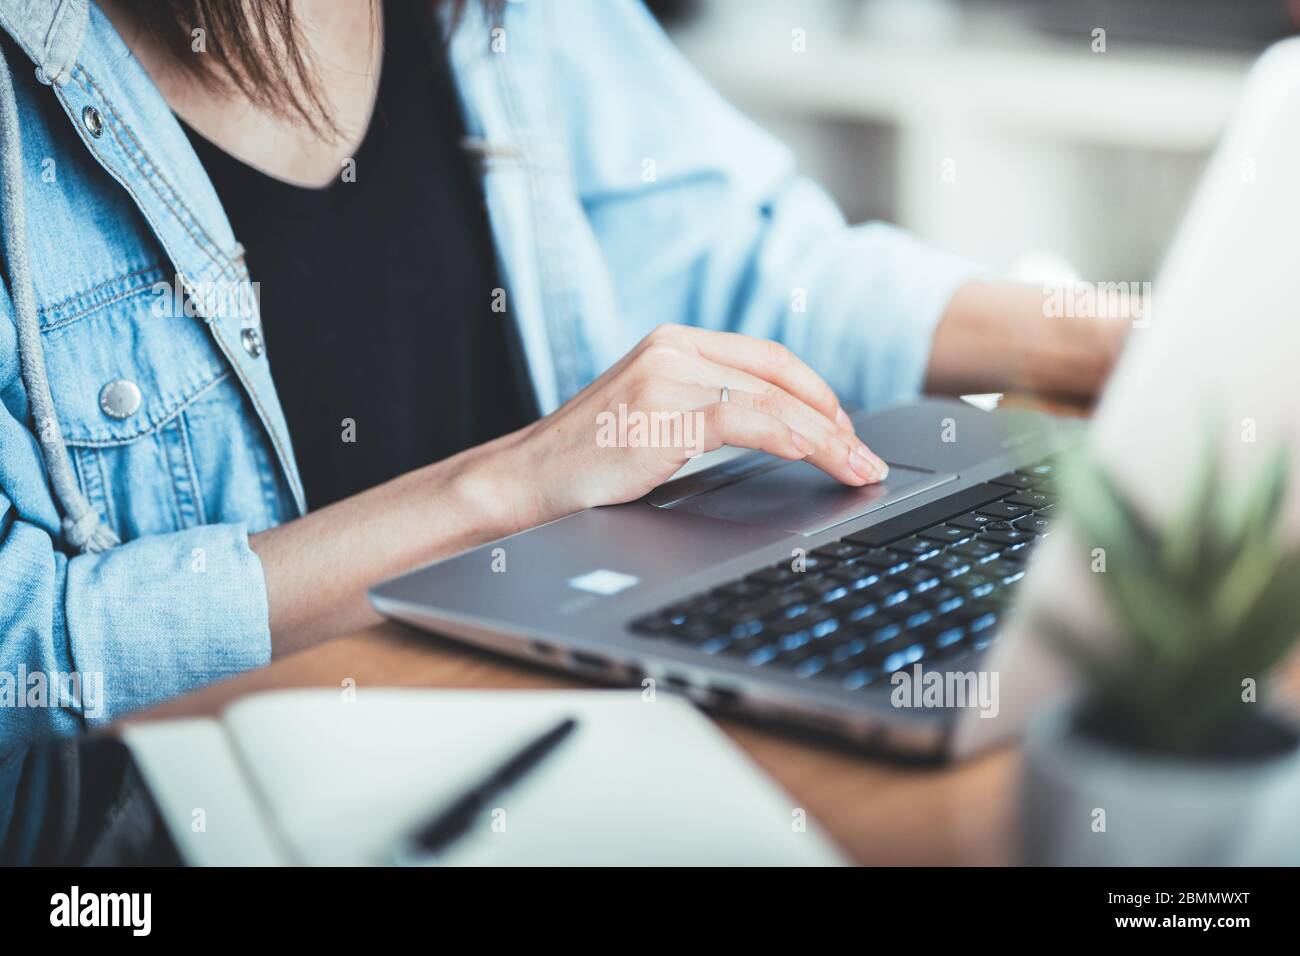 Immagine ritagliata della donna che lavora nel suo ufficio tramite laptop, giovane manager femminile che utilizza un dispositivo portatile mentre si è seduti alla scrivania, luce fioca, lavoro. Foto Stock